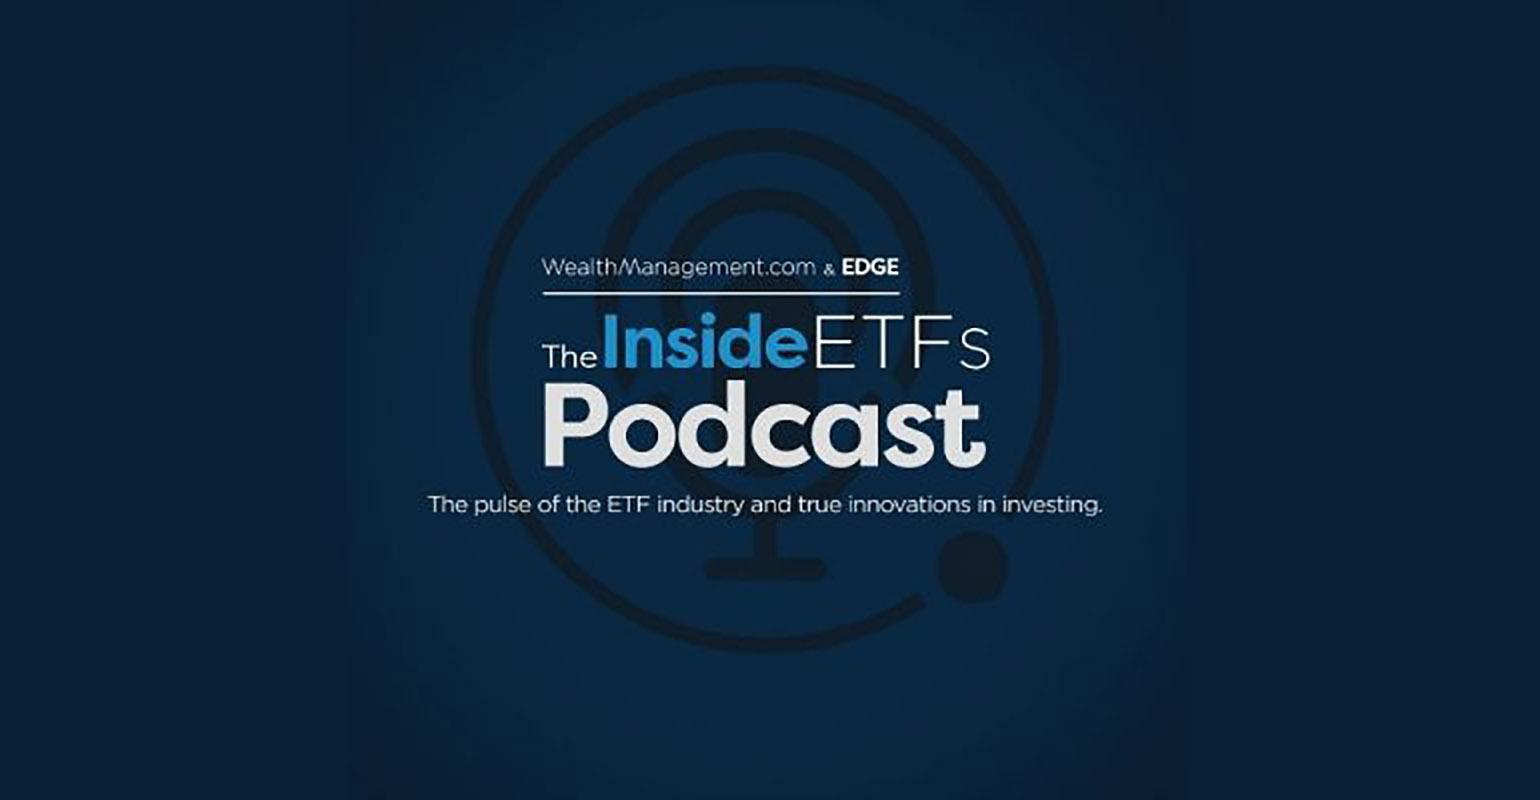 inside-etfs-podcast-promo.jpg